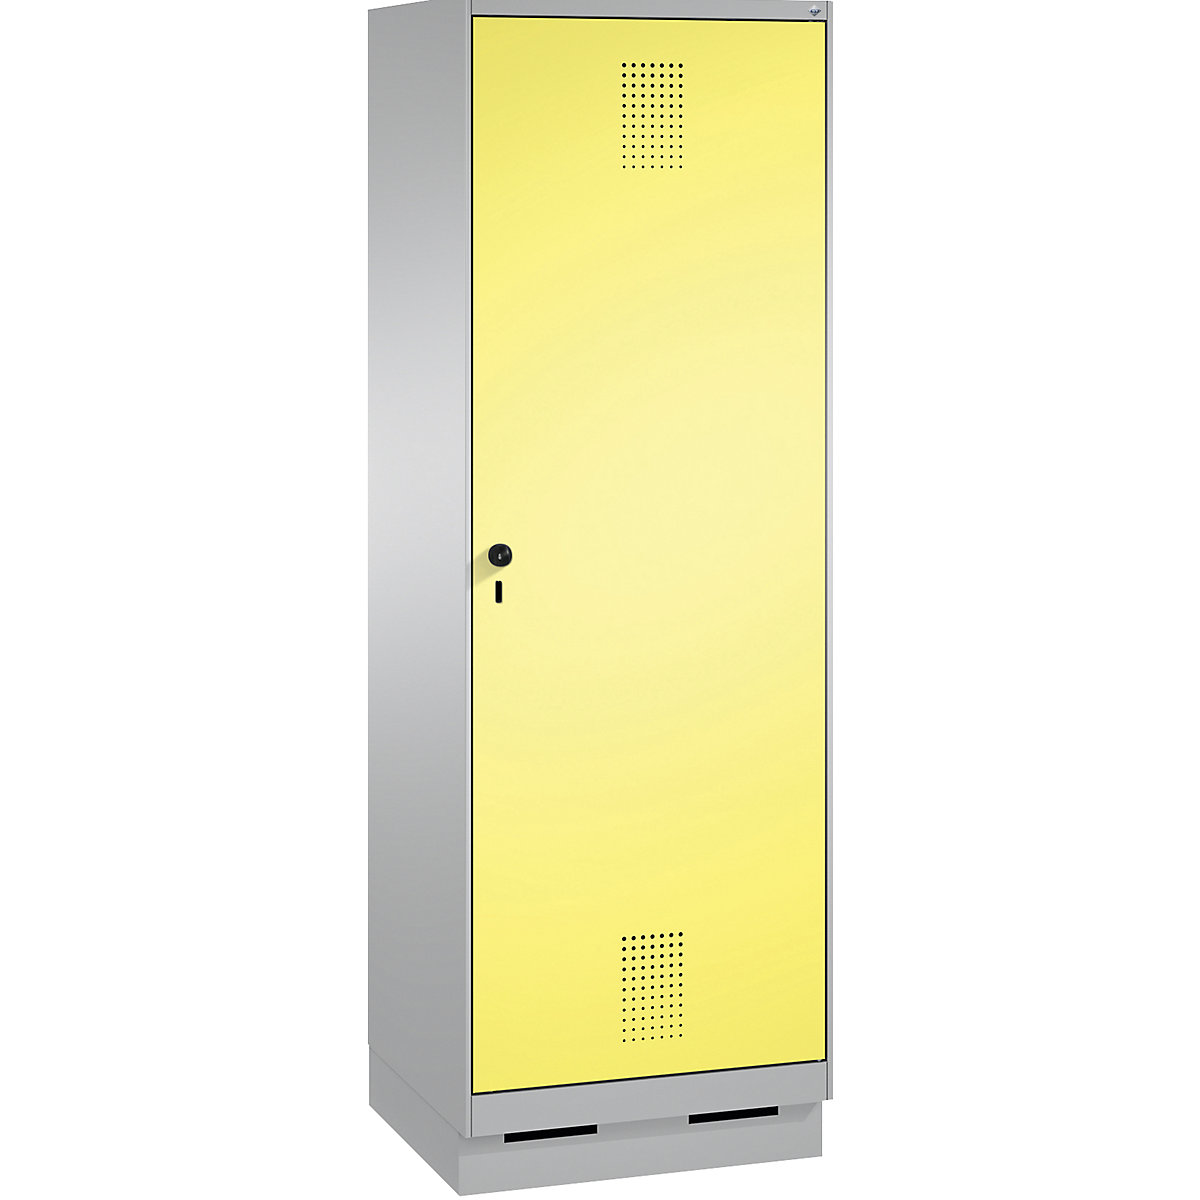 EVOLO Garderobenschrank, Tür über 2 Abteile, mit Sockel C+P, 2 Abteile, 1 Tür, Abteilbreite 300 mm, weißaluminium / schwefelgelb-15